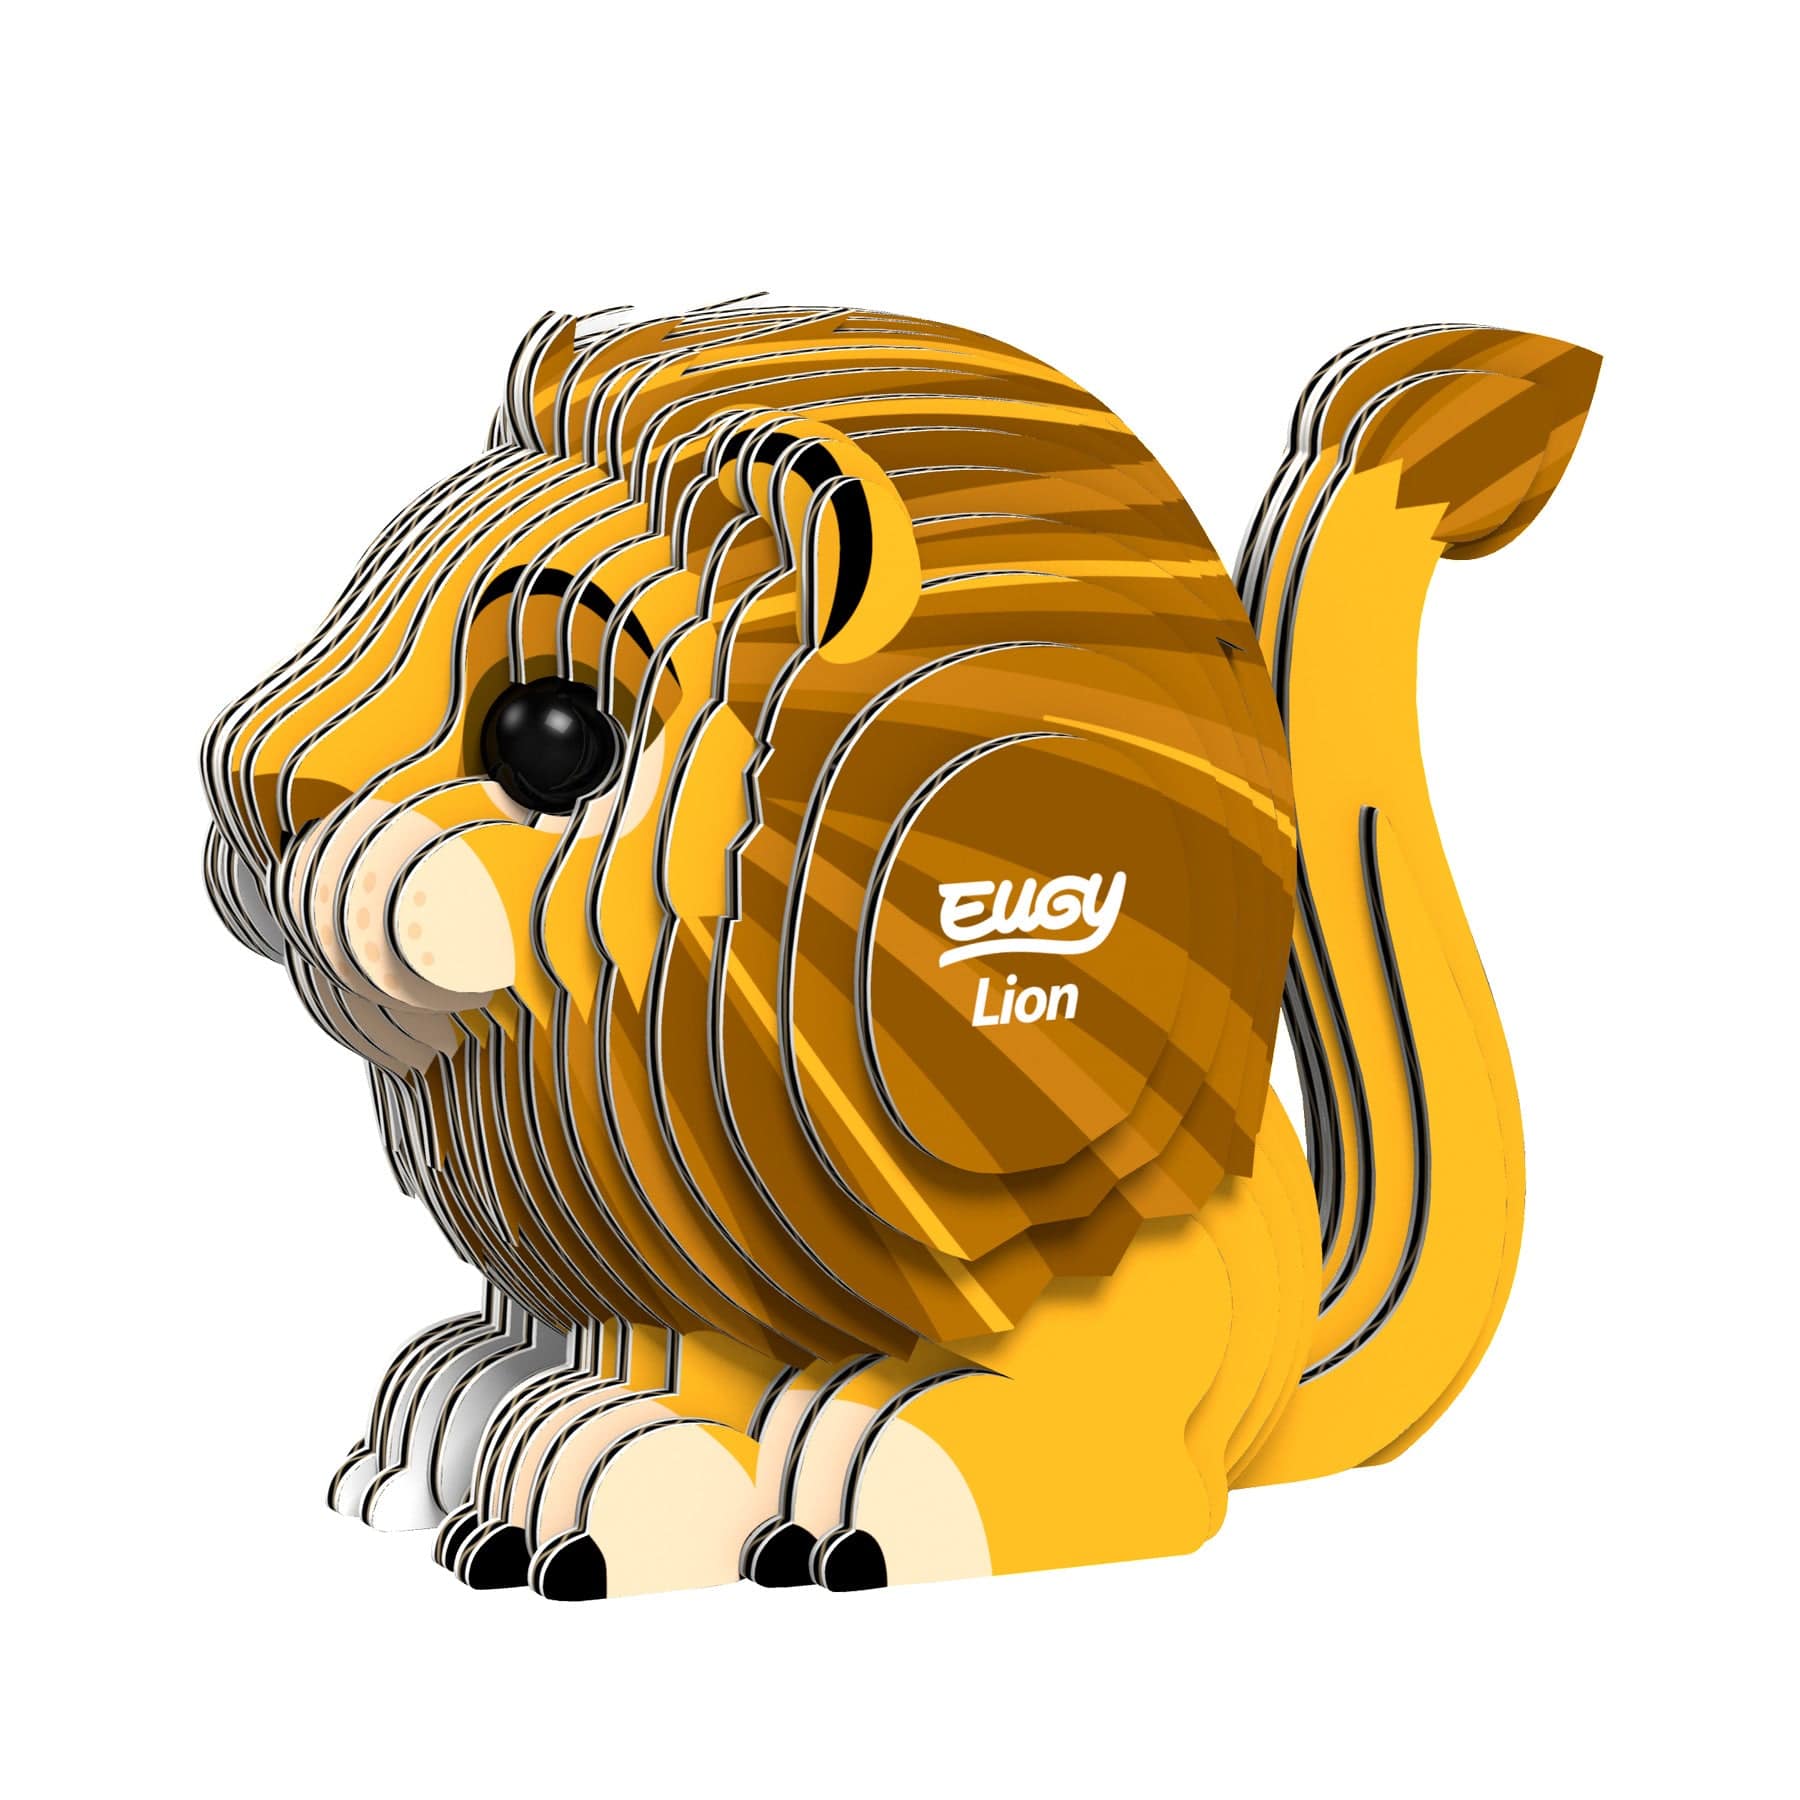 Lion 3D model kit